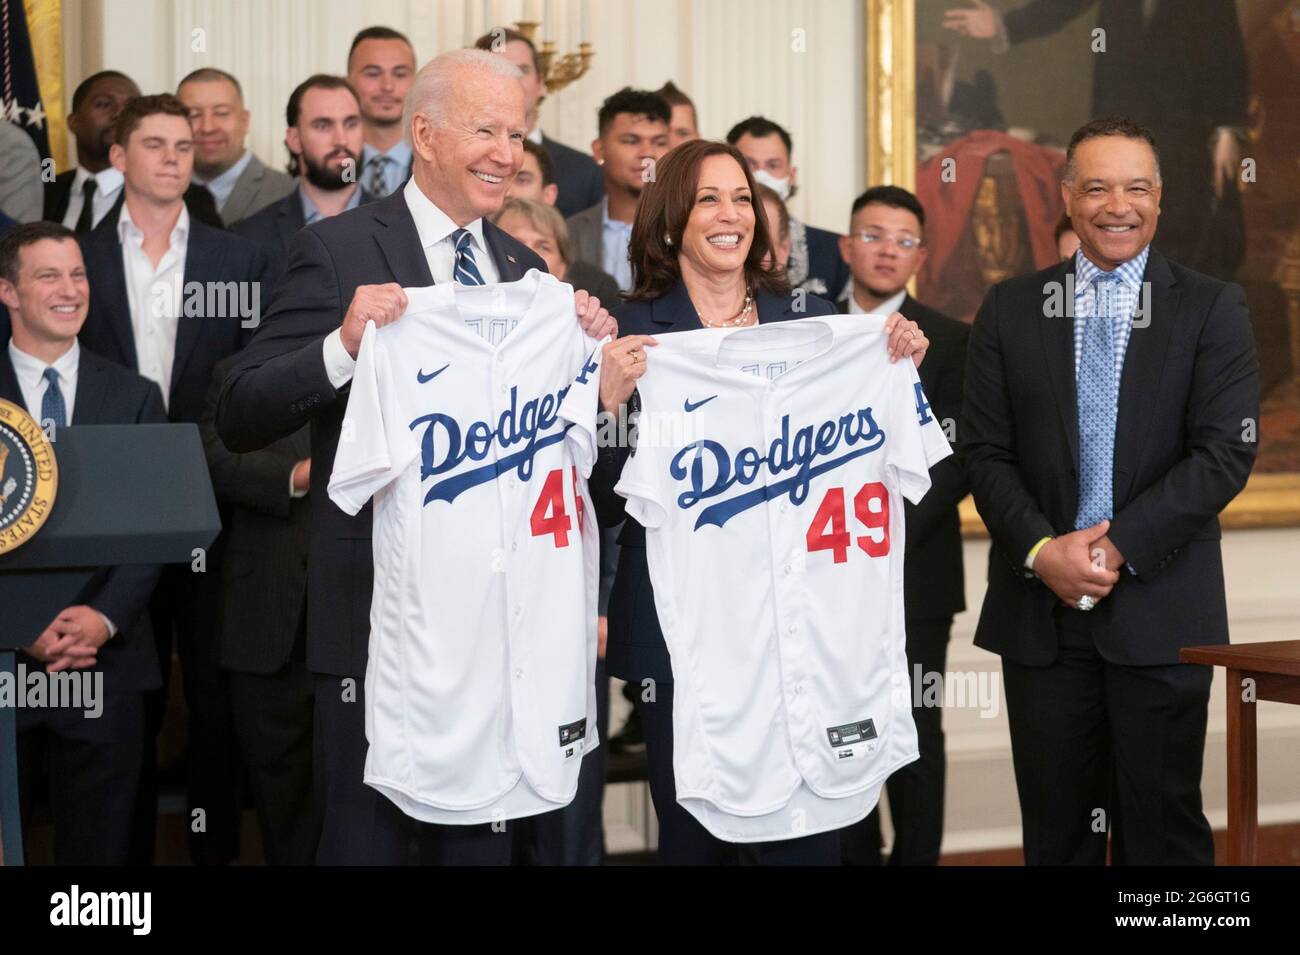 US-Präsident Joe Biden und Vizepräsident Kamala Harris halten Los Angeles Dodger Baseballtrikots während einer Zeremonie zu Ehren des Teams im East Room im Weißen Haus am 2. Juli 2021 in Washington, D.C., hoch.die Dodgers gewannen die World Series 2020. Stockfoto